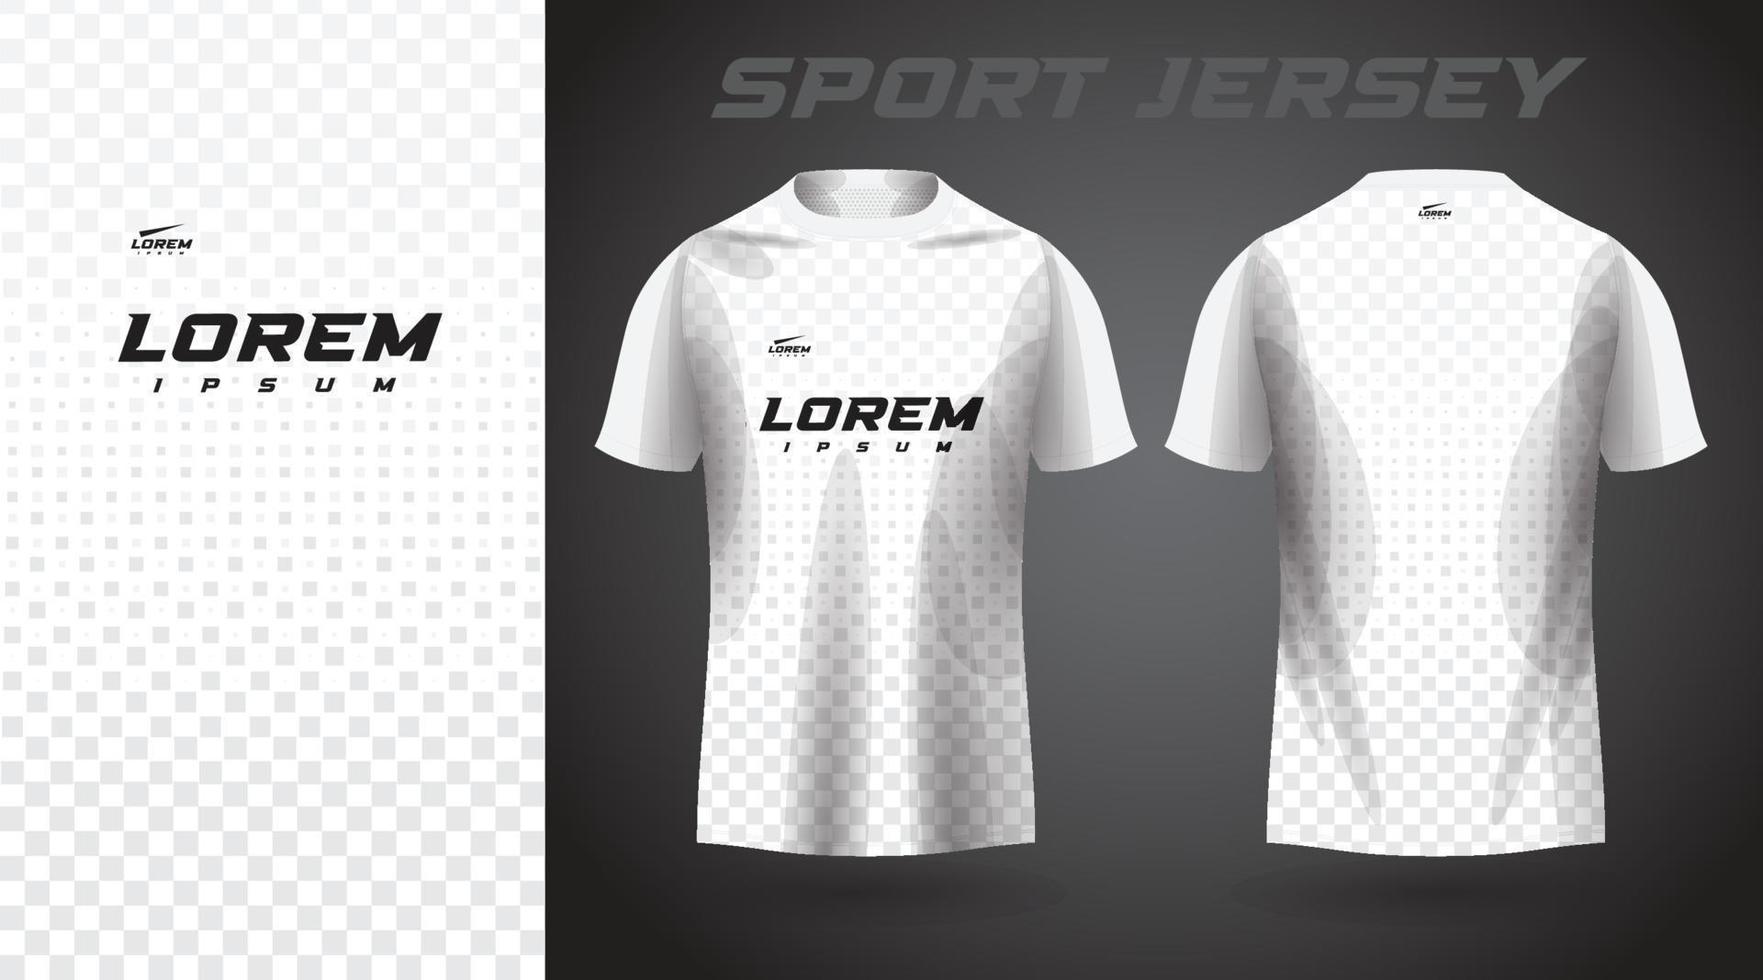 white t-shirt sport jersey design vector